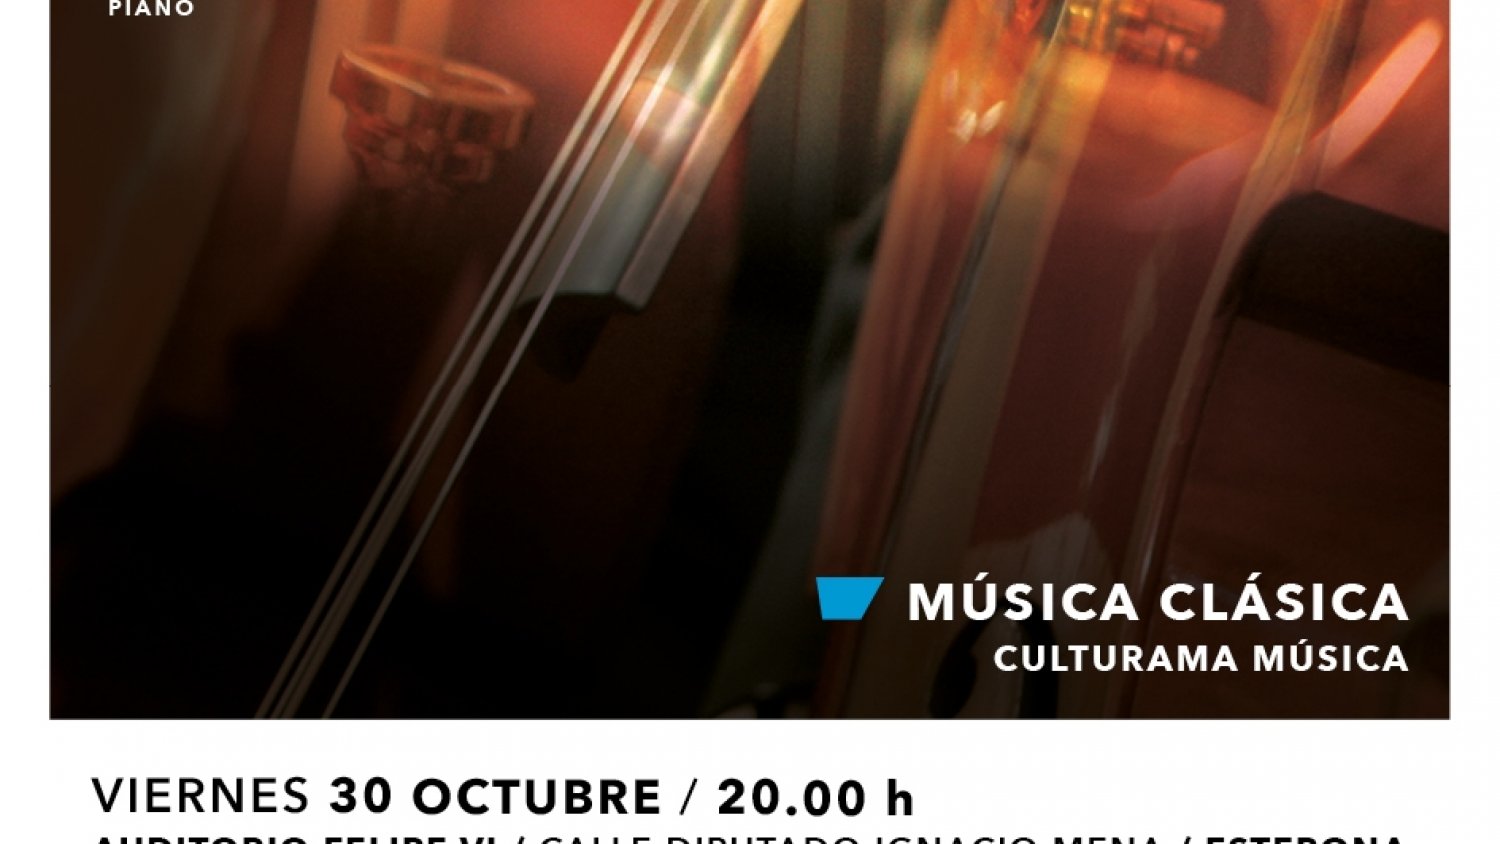 Estepona se suma al 250 aniversario de Beethoven con un concierto de la Orquesta Sinfónica de Málaga